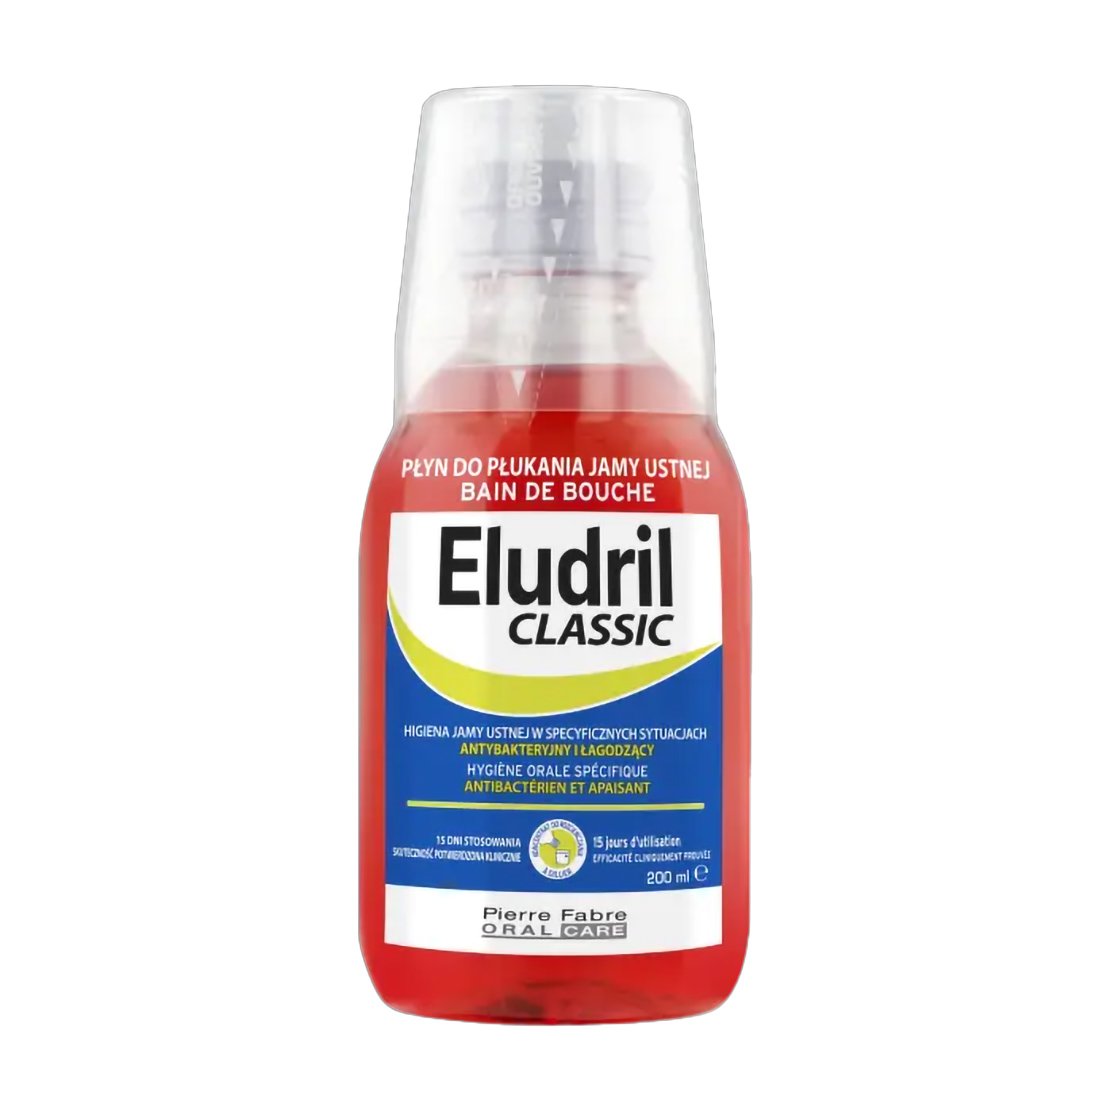 Eludril Classic Mouthwash Στοματικό Διάλυμα για Καταπραϋντική & Βακτηριακή Προστασία 200ml